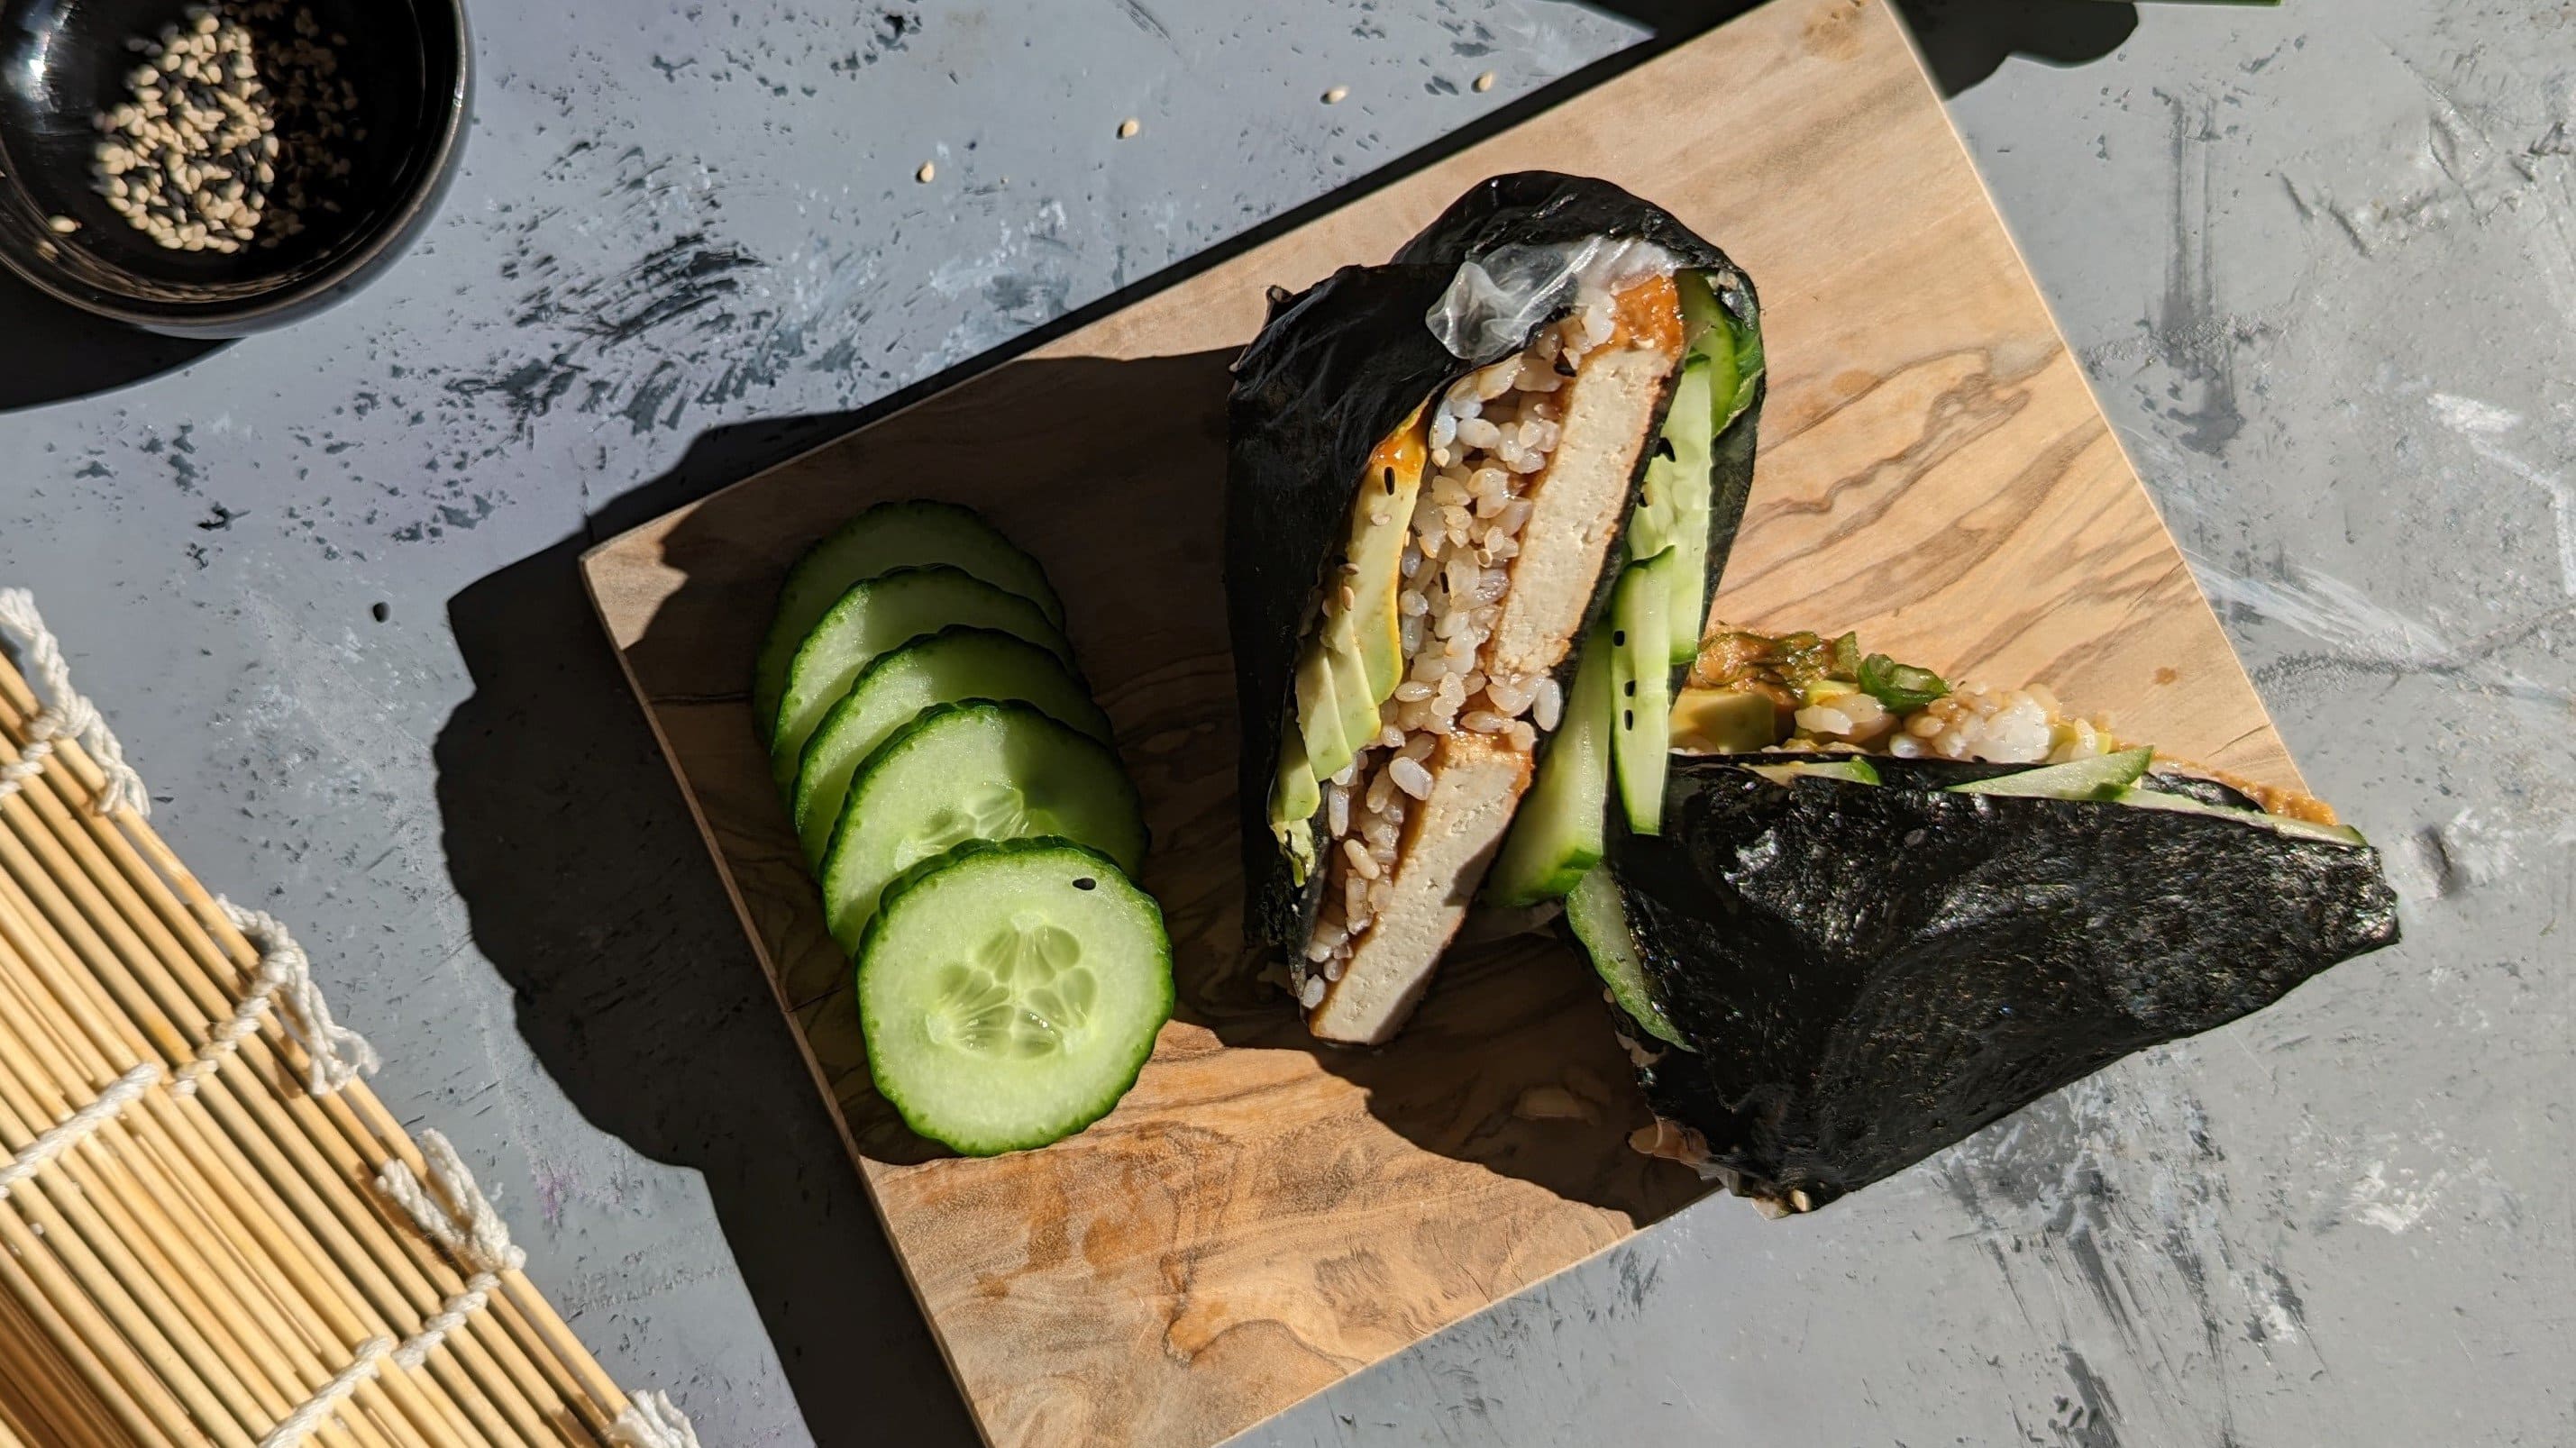 Zwei Sushi-Wraps mit einigen Gurkenscheiben auf einem kleinen Holzbrett und grauem Untergrund. Links daneben eine Sushi-Matte und ein kleines schwarzes Schälchen mit Sesam.